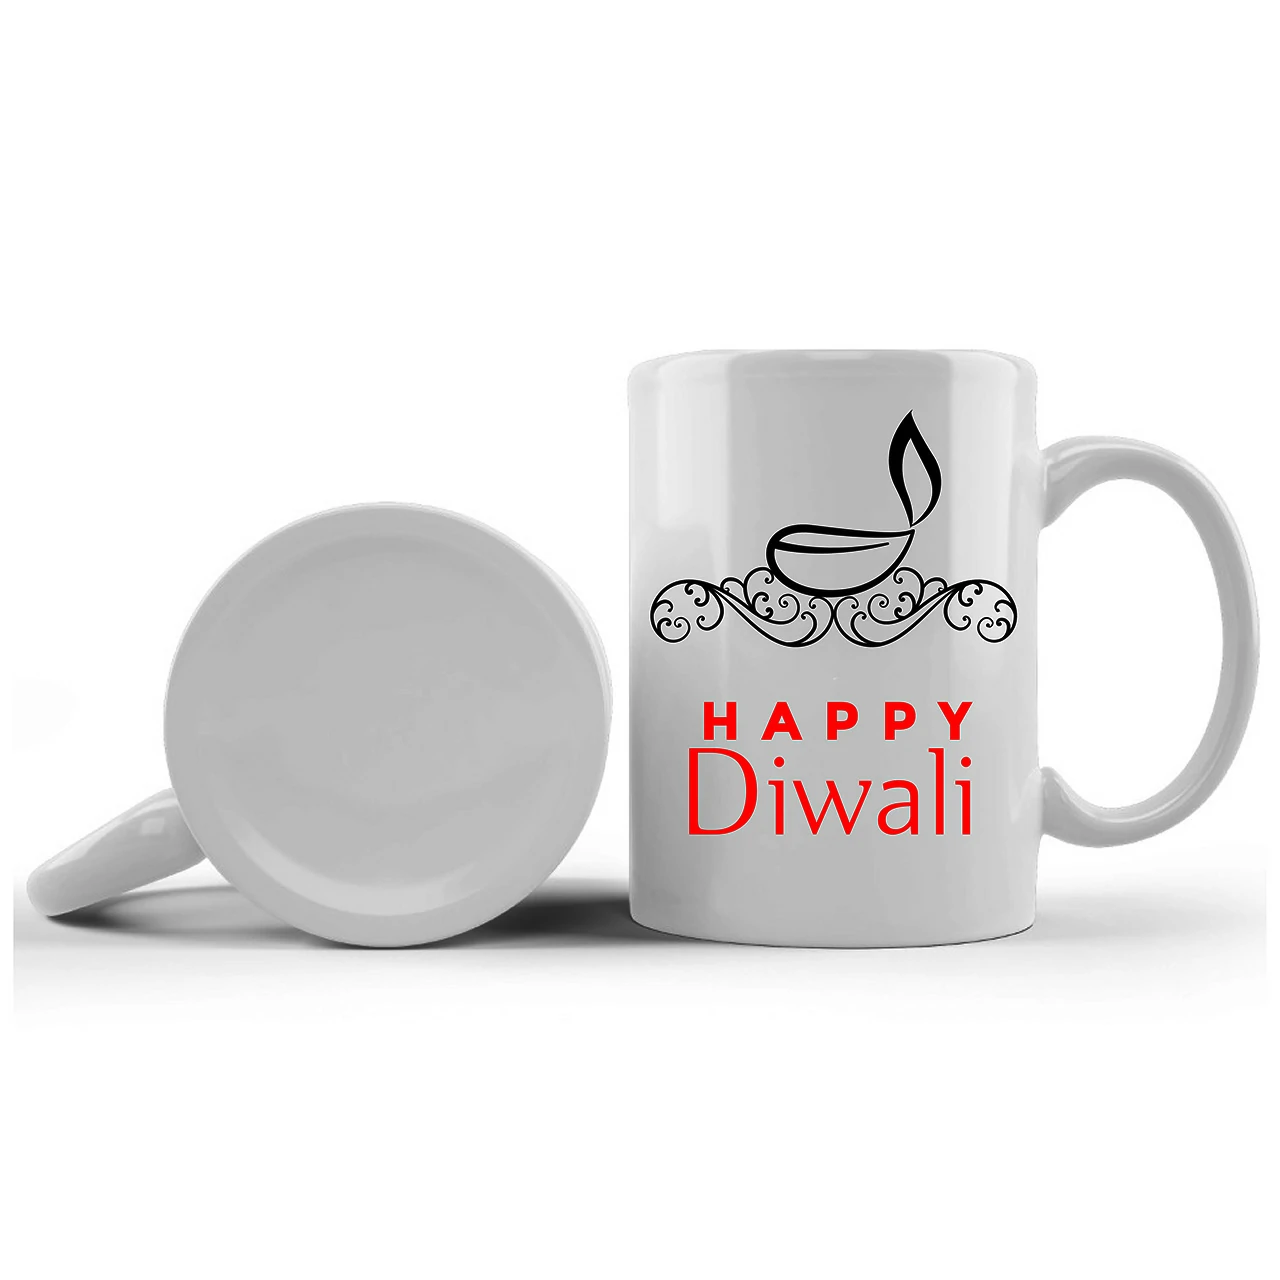 Happy Diwali Printed Ceramic Mug Gifts for | Diwali Gifts, Diwali Gift Items, Diwali Gifts for Friends, Diwali Gifts for Friends and Family, Gifts for Diwali (Design 7)